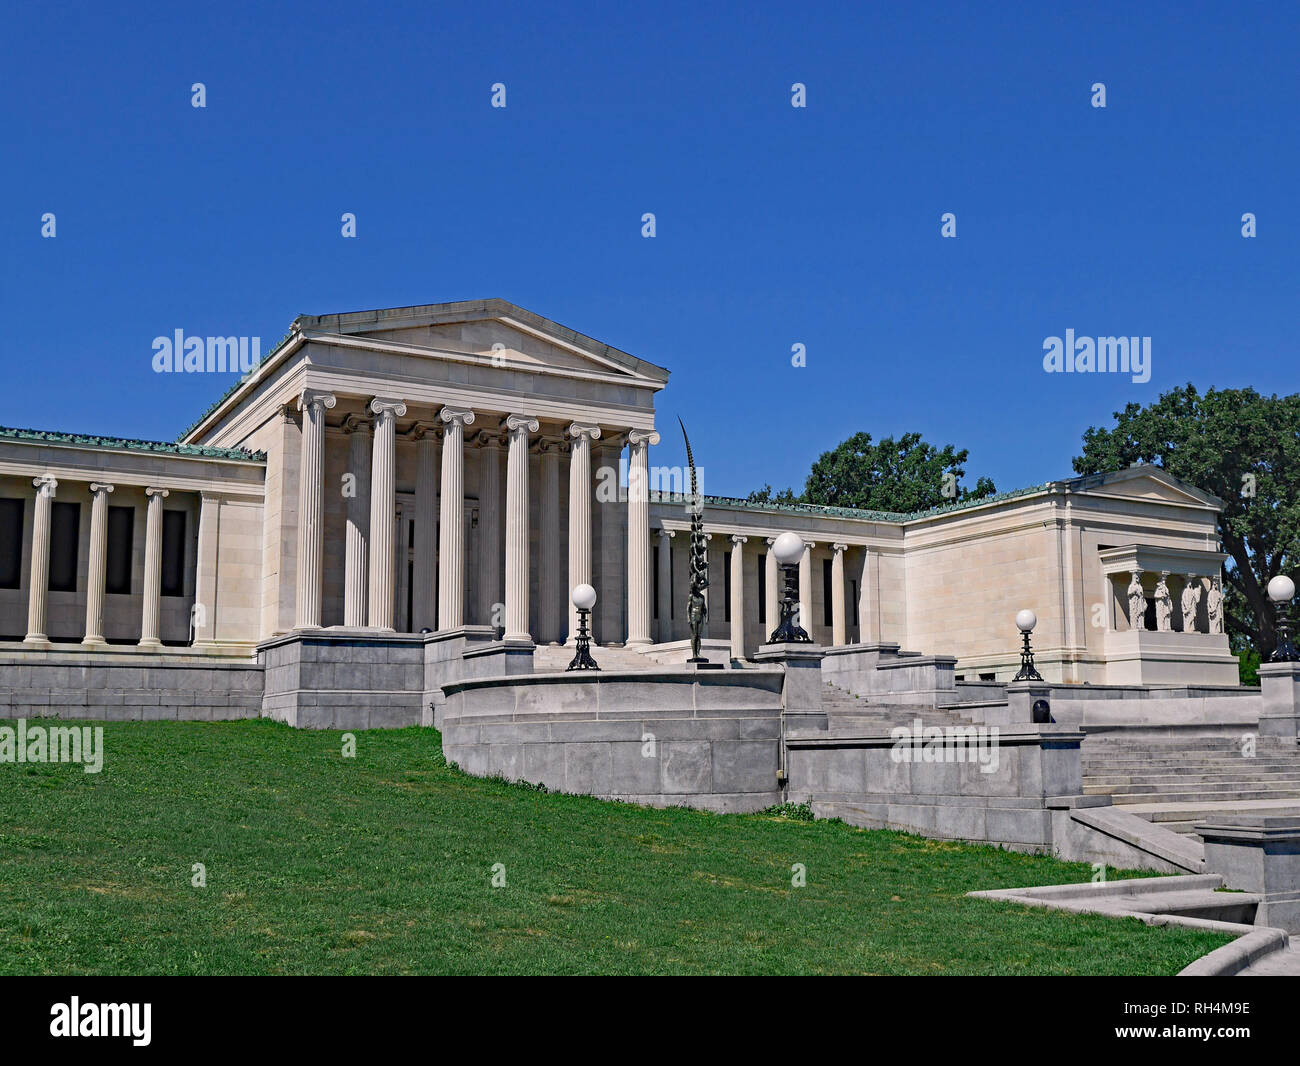 BUFFALO, USA - Agosto 2016: La Galería de Arte Albright Knox's diseño externo imita a un templo griego, pero su colección está dedicada principalmente a la moderna Foto de stock